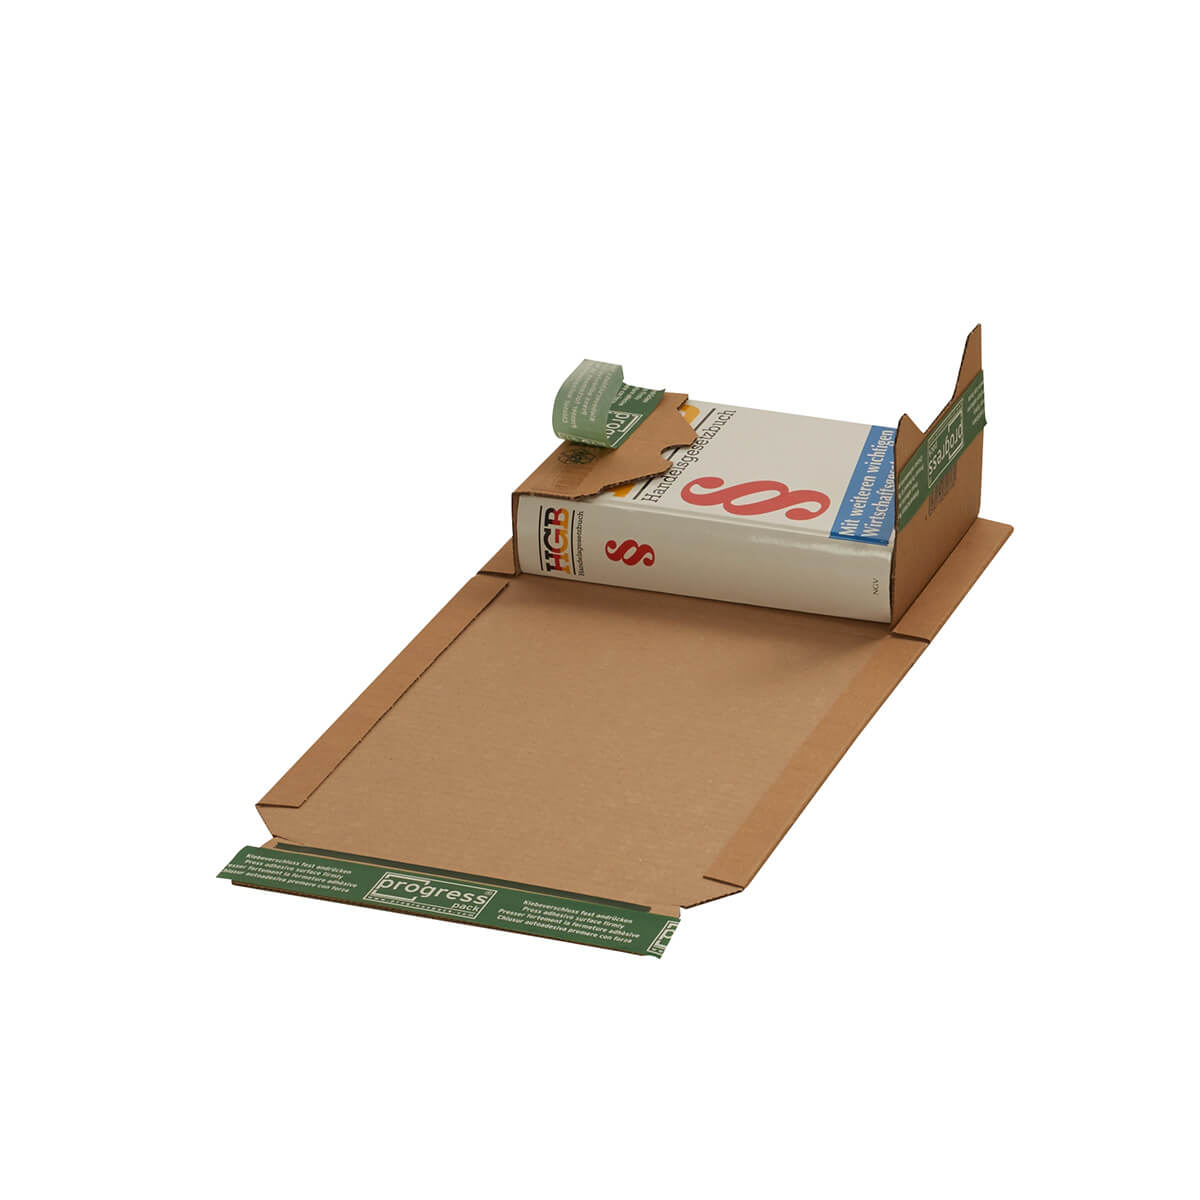 Buchverpackung 217x155x60-0 mm Pappe DIN A5 ECO PLUS selbstklebend + Aufreißfaden - progressPACK